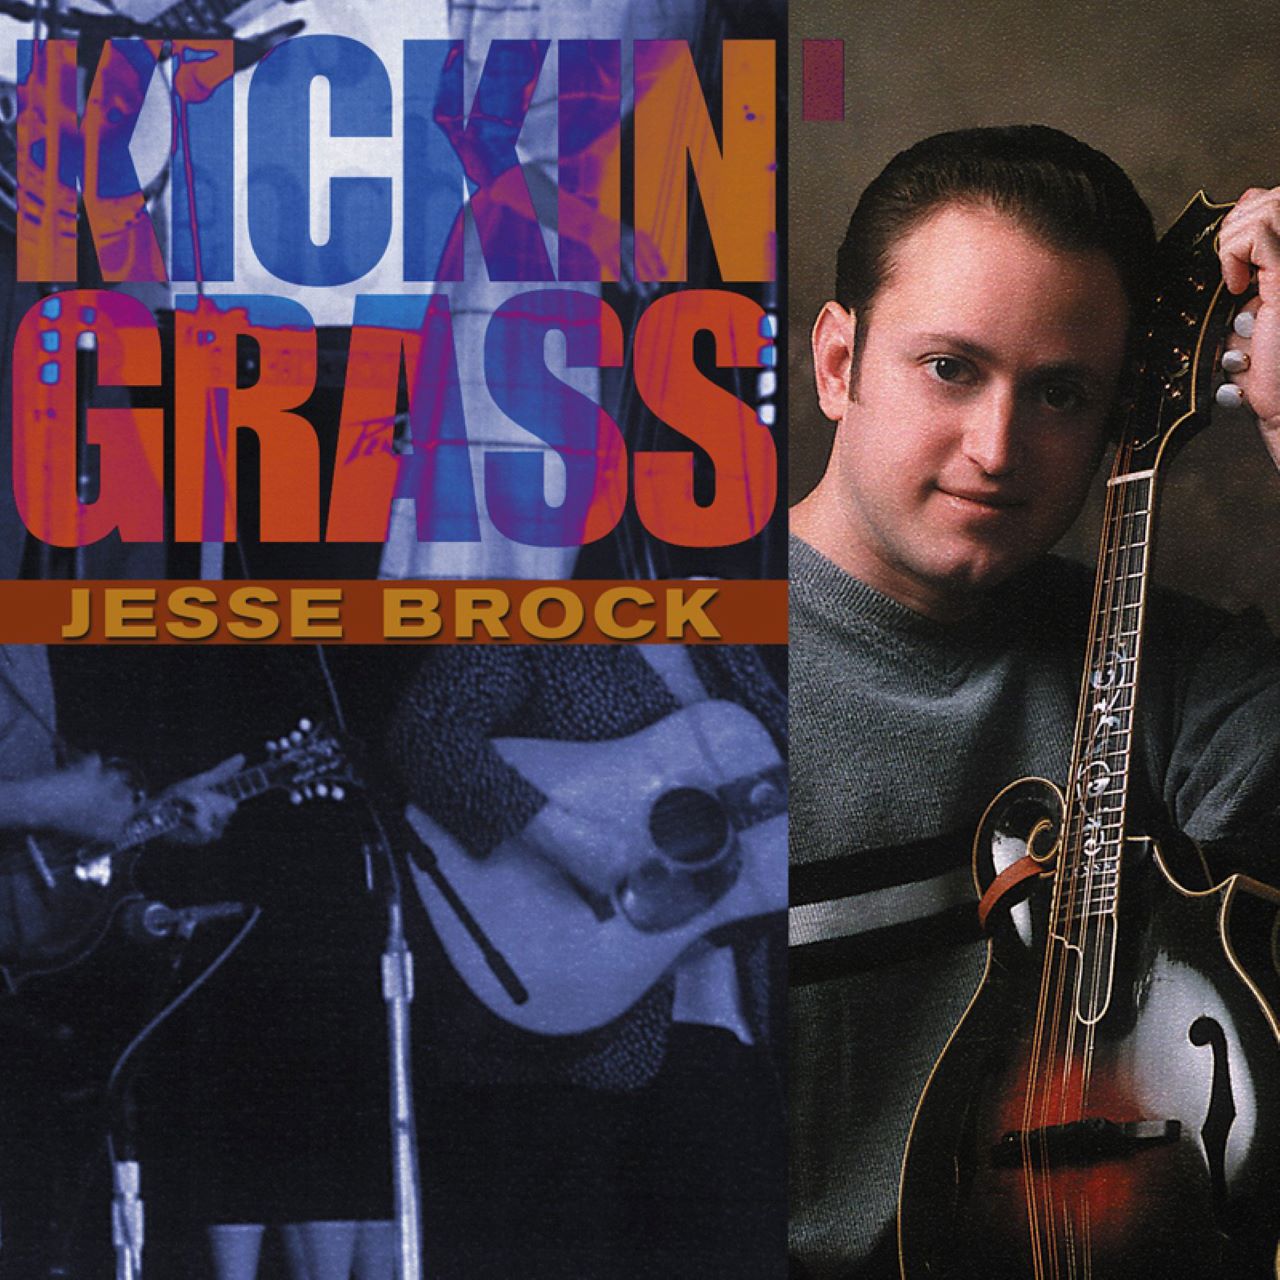 Jesse Brock - Kickin’ Grass cover album